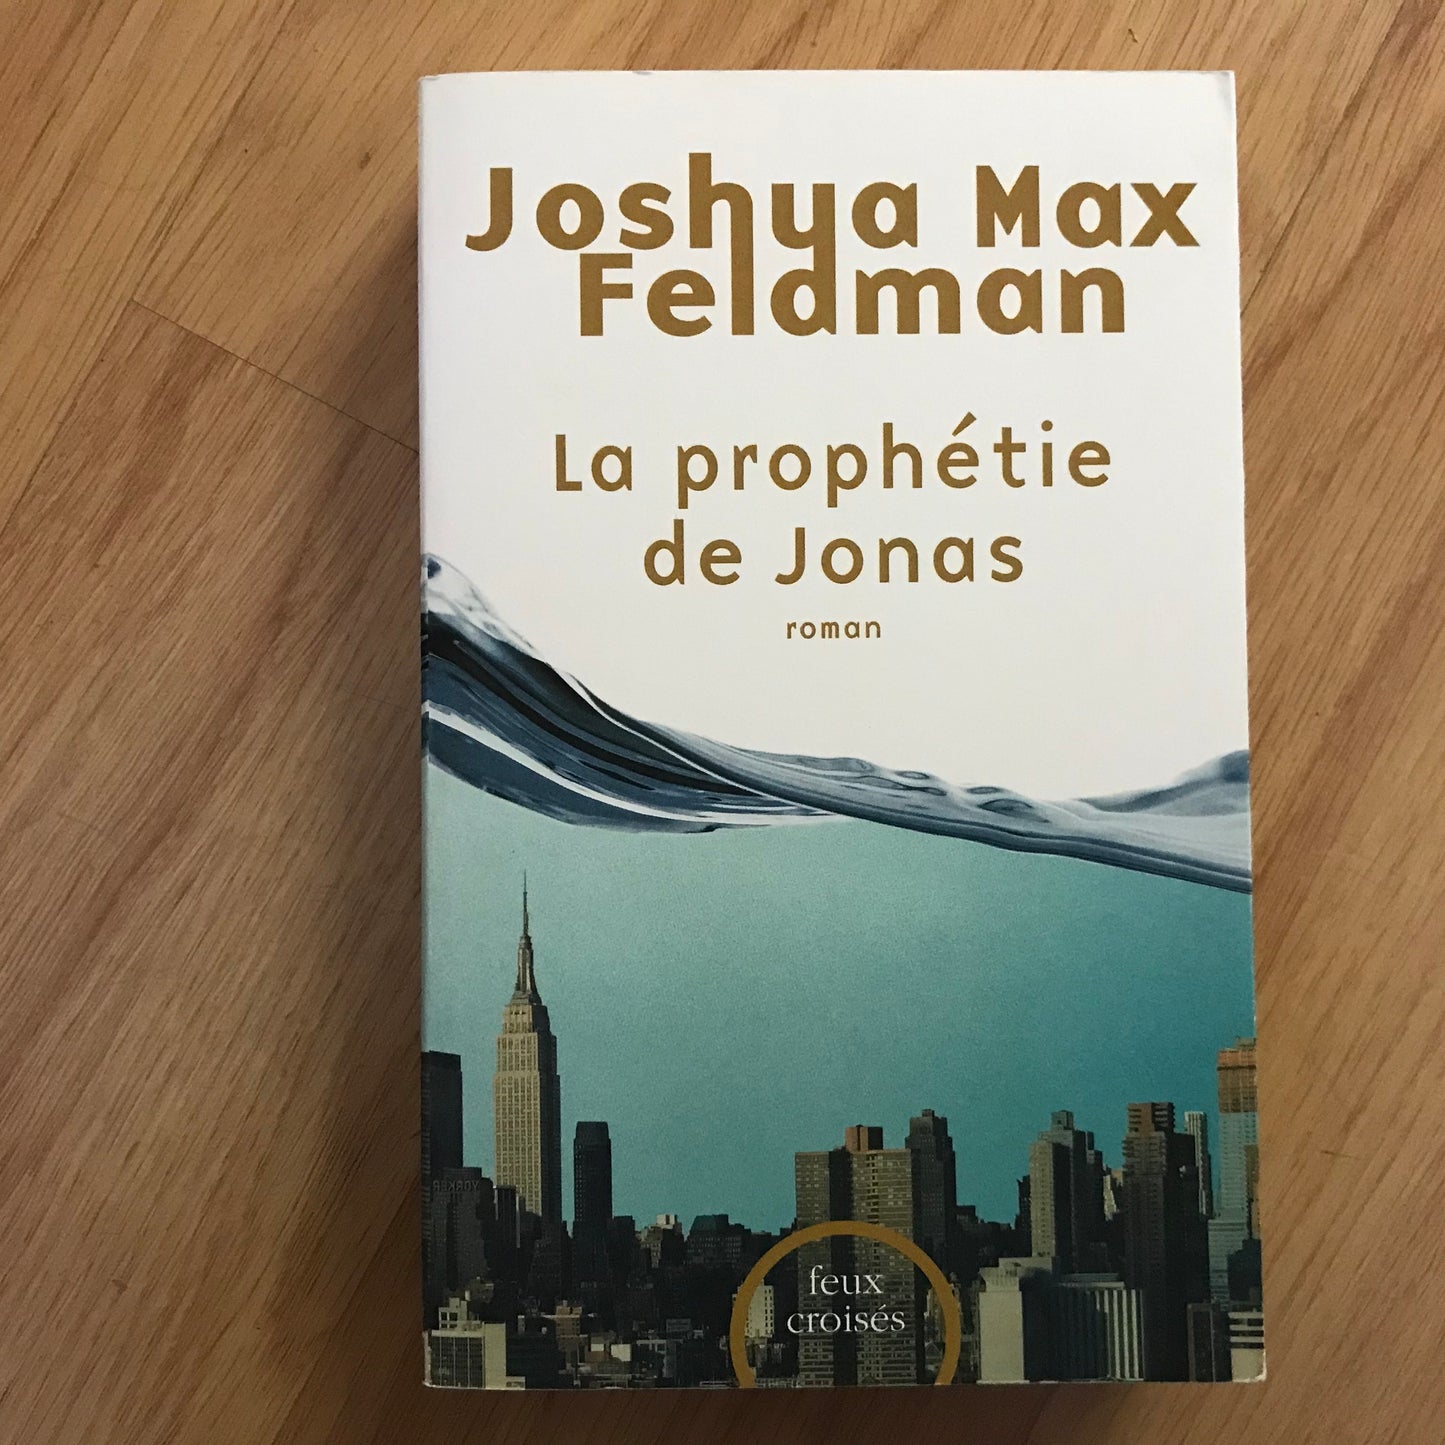 Feldman, Joshua Max - La prophétie de Jonas